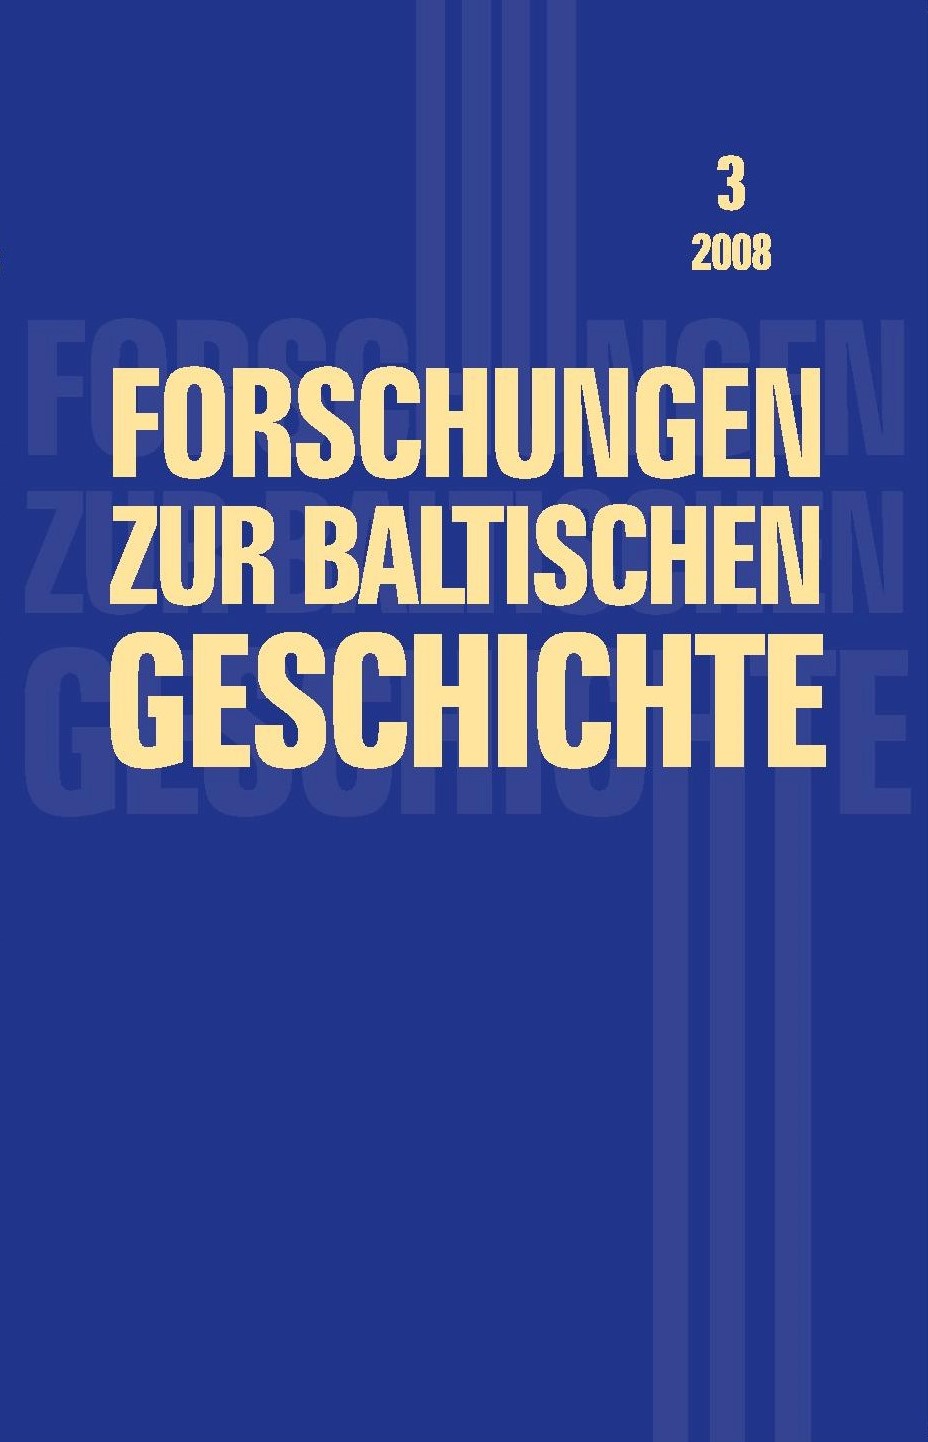 Forschungen zur baltischen Geschichte, Band 3, 2008